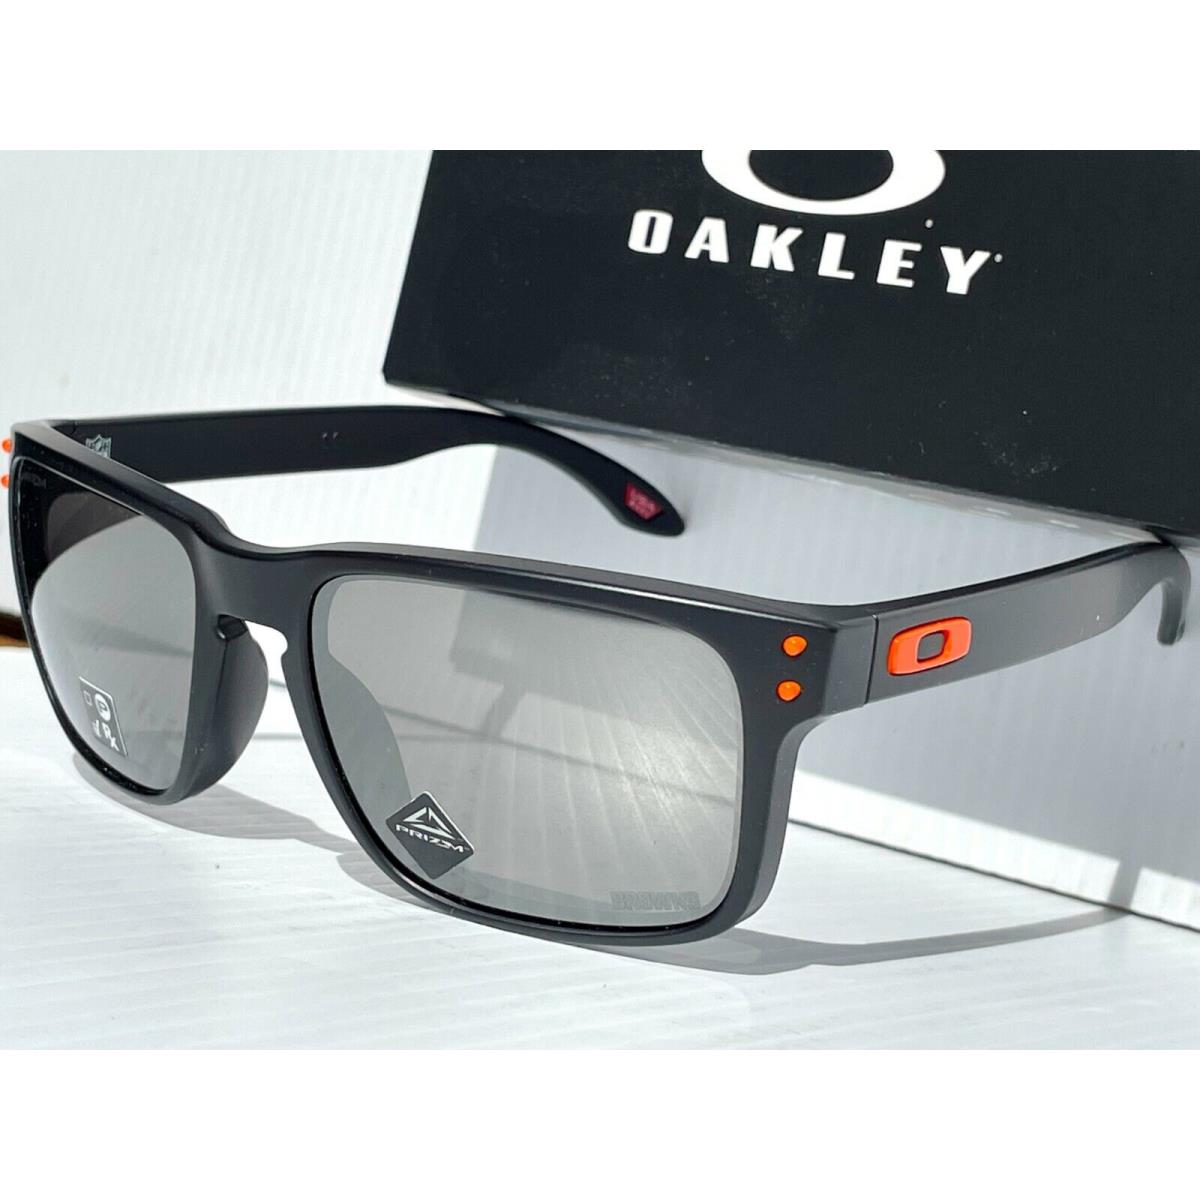 Oakley sunglasses Holbrook - Black Frame, Silver Lens 5